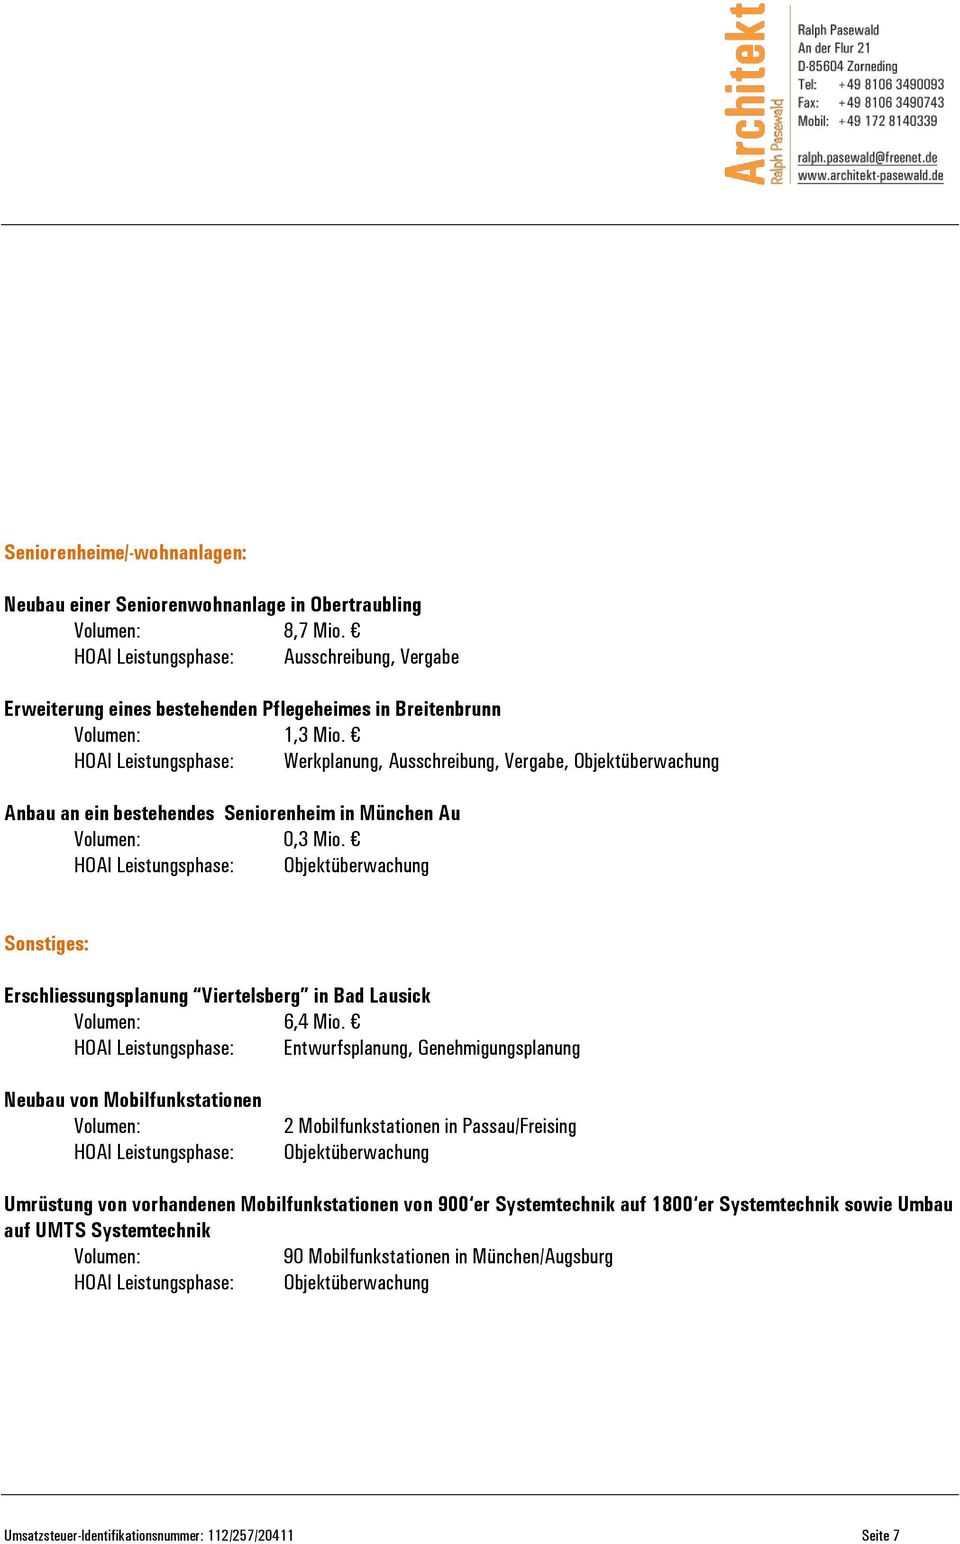 HOAI Leistungsphase: Entwurfsplanung, Genehmigungsplanung Neubau von Mobilfunkstationen Volumen: HOAI Leistungsphase: 2 Mobilfunkstationen in Passau/Freising Objektüberwachung